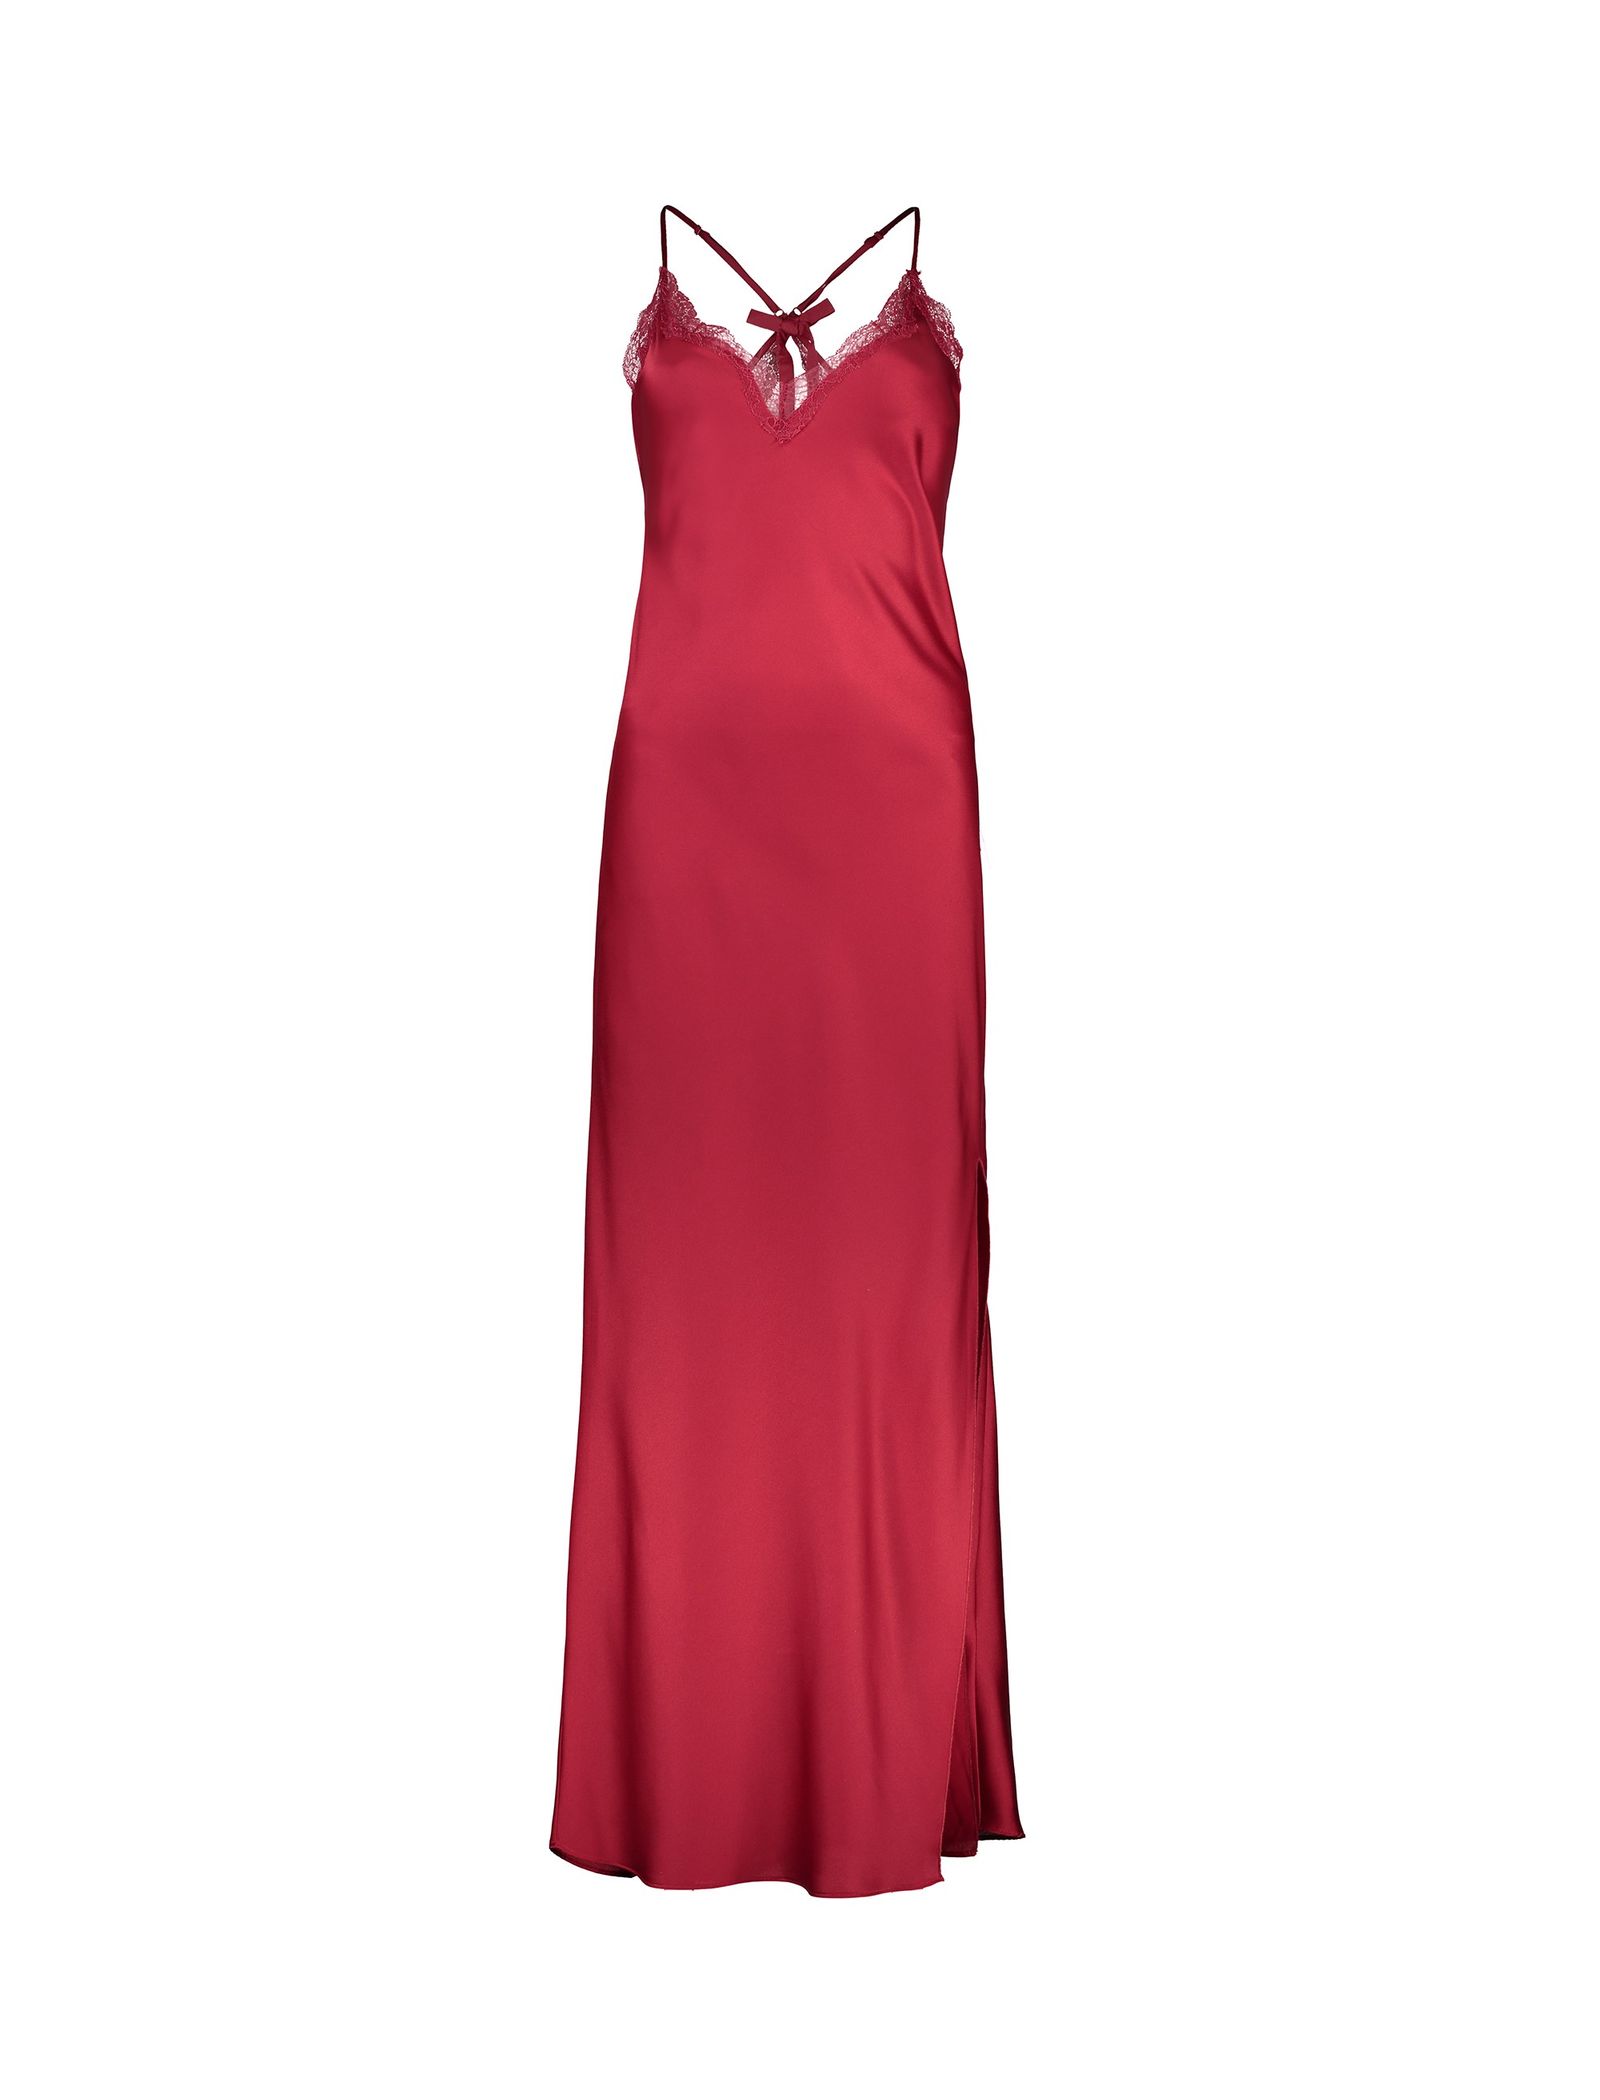 لباس خواب بلند زنانه - اتام - قرمز - 1